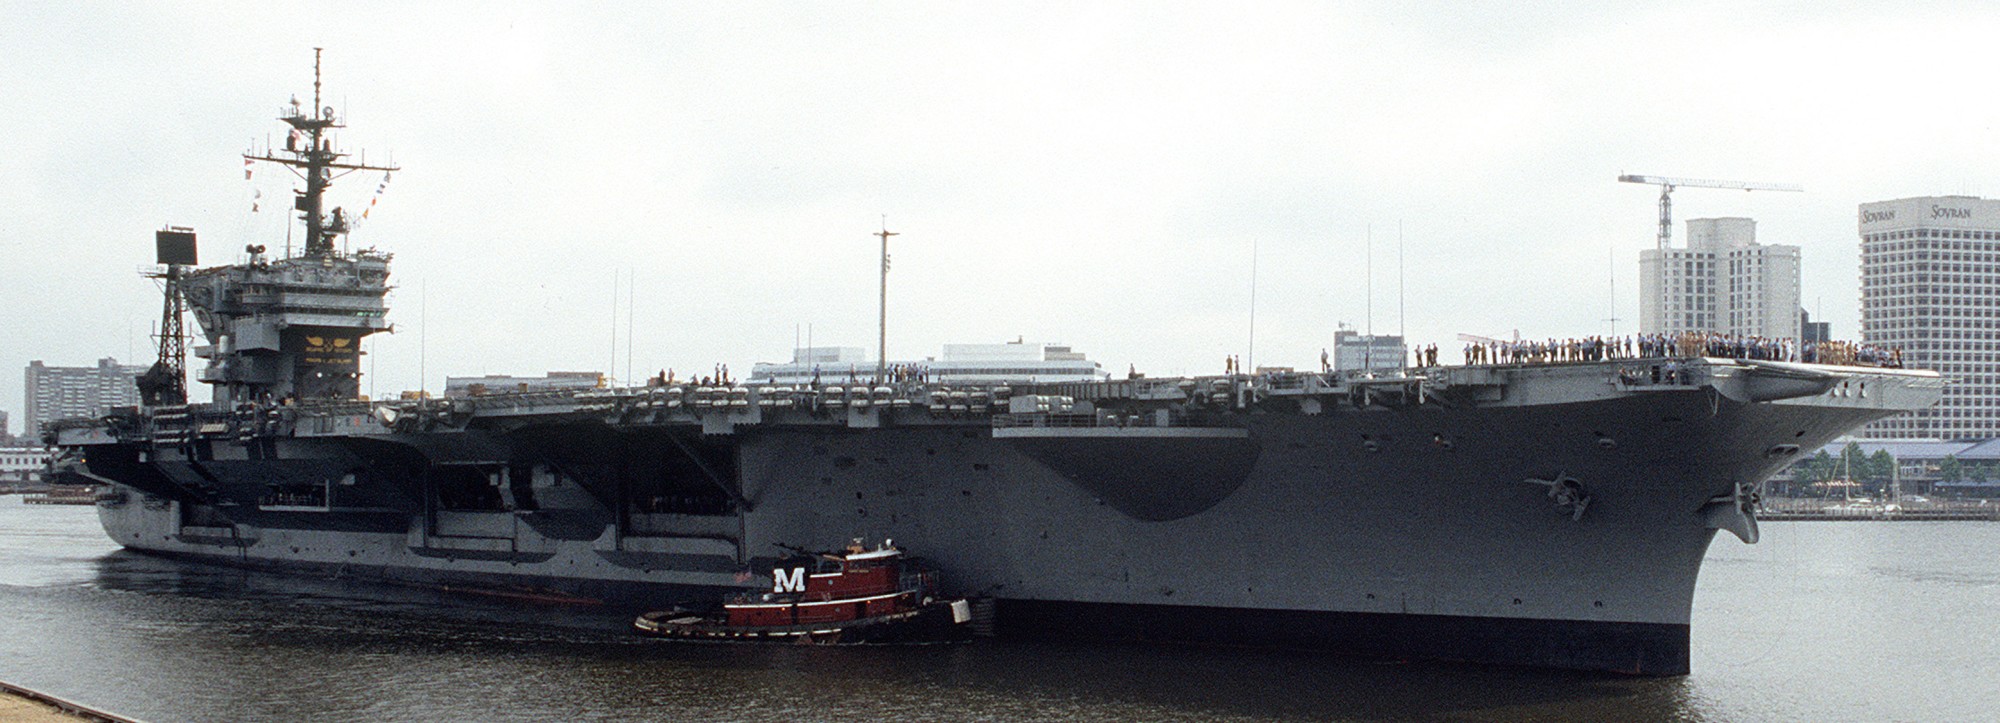 cv-67 uss john f. kennedy aircraft carrier us navy sra norfolk 1991 30